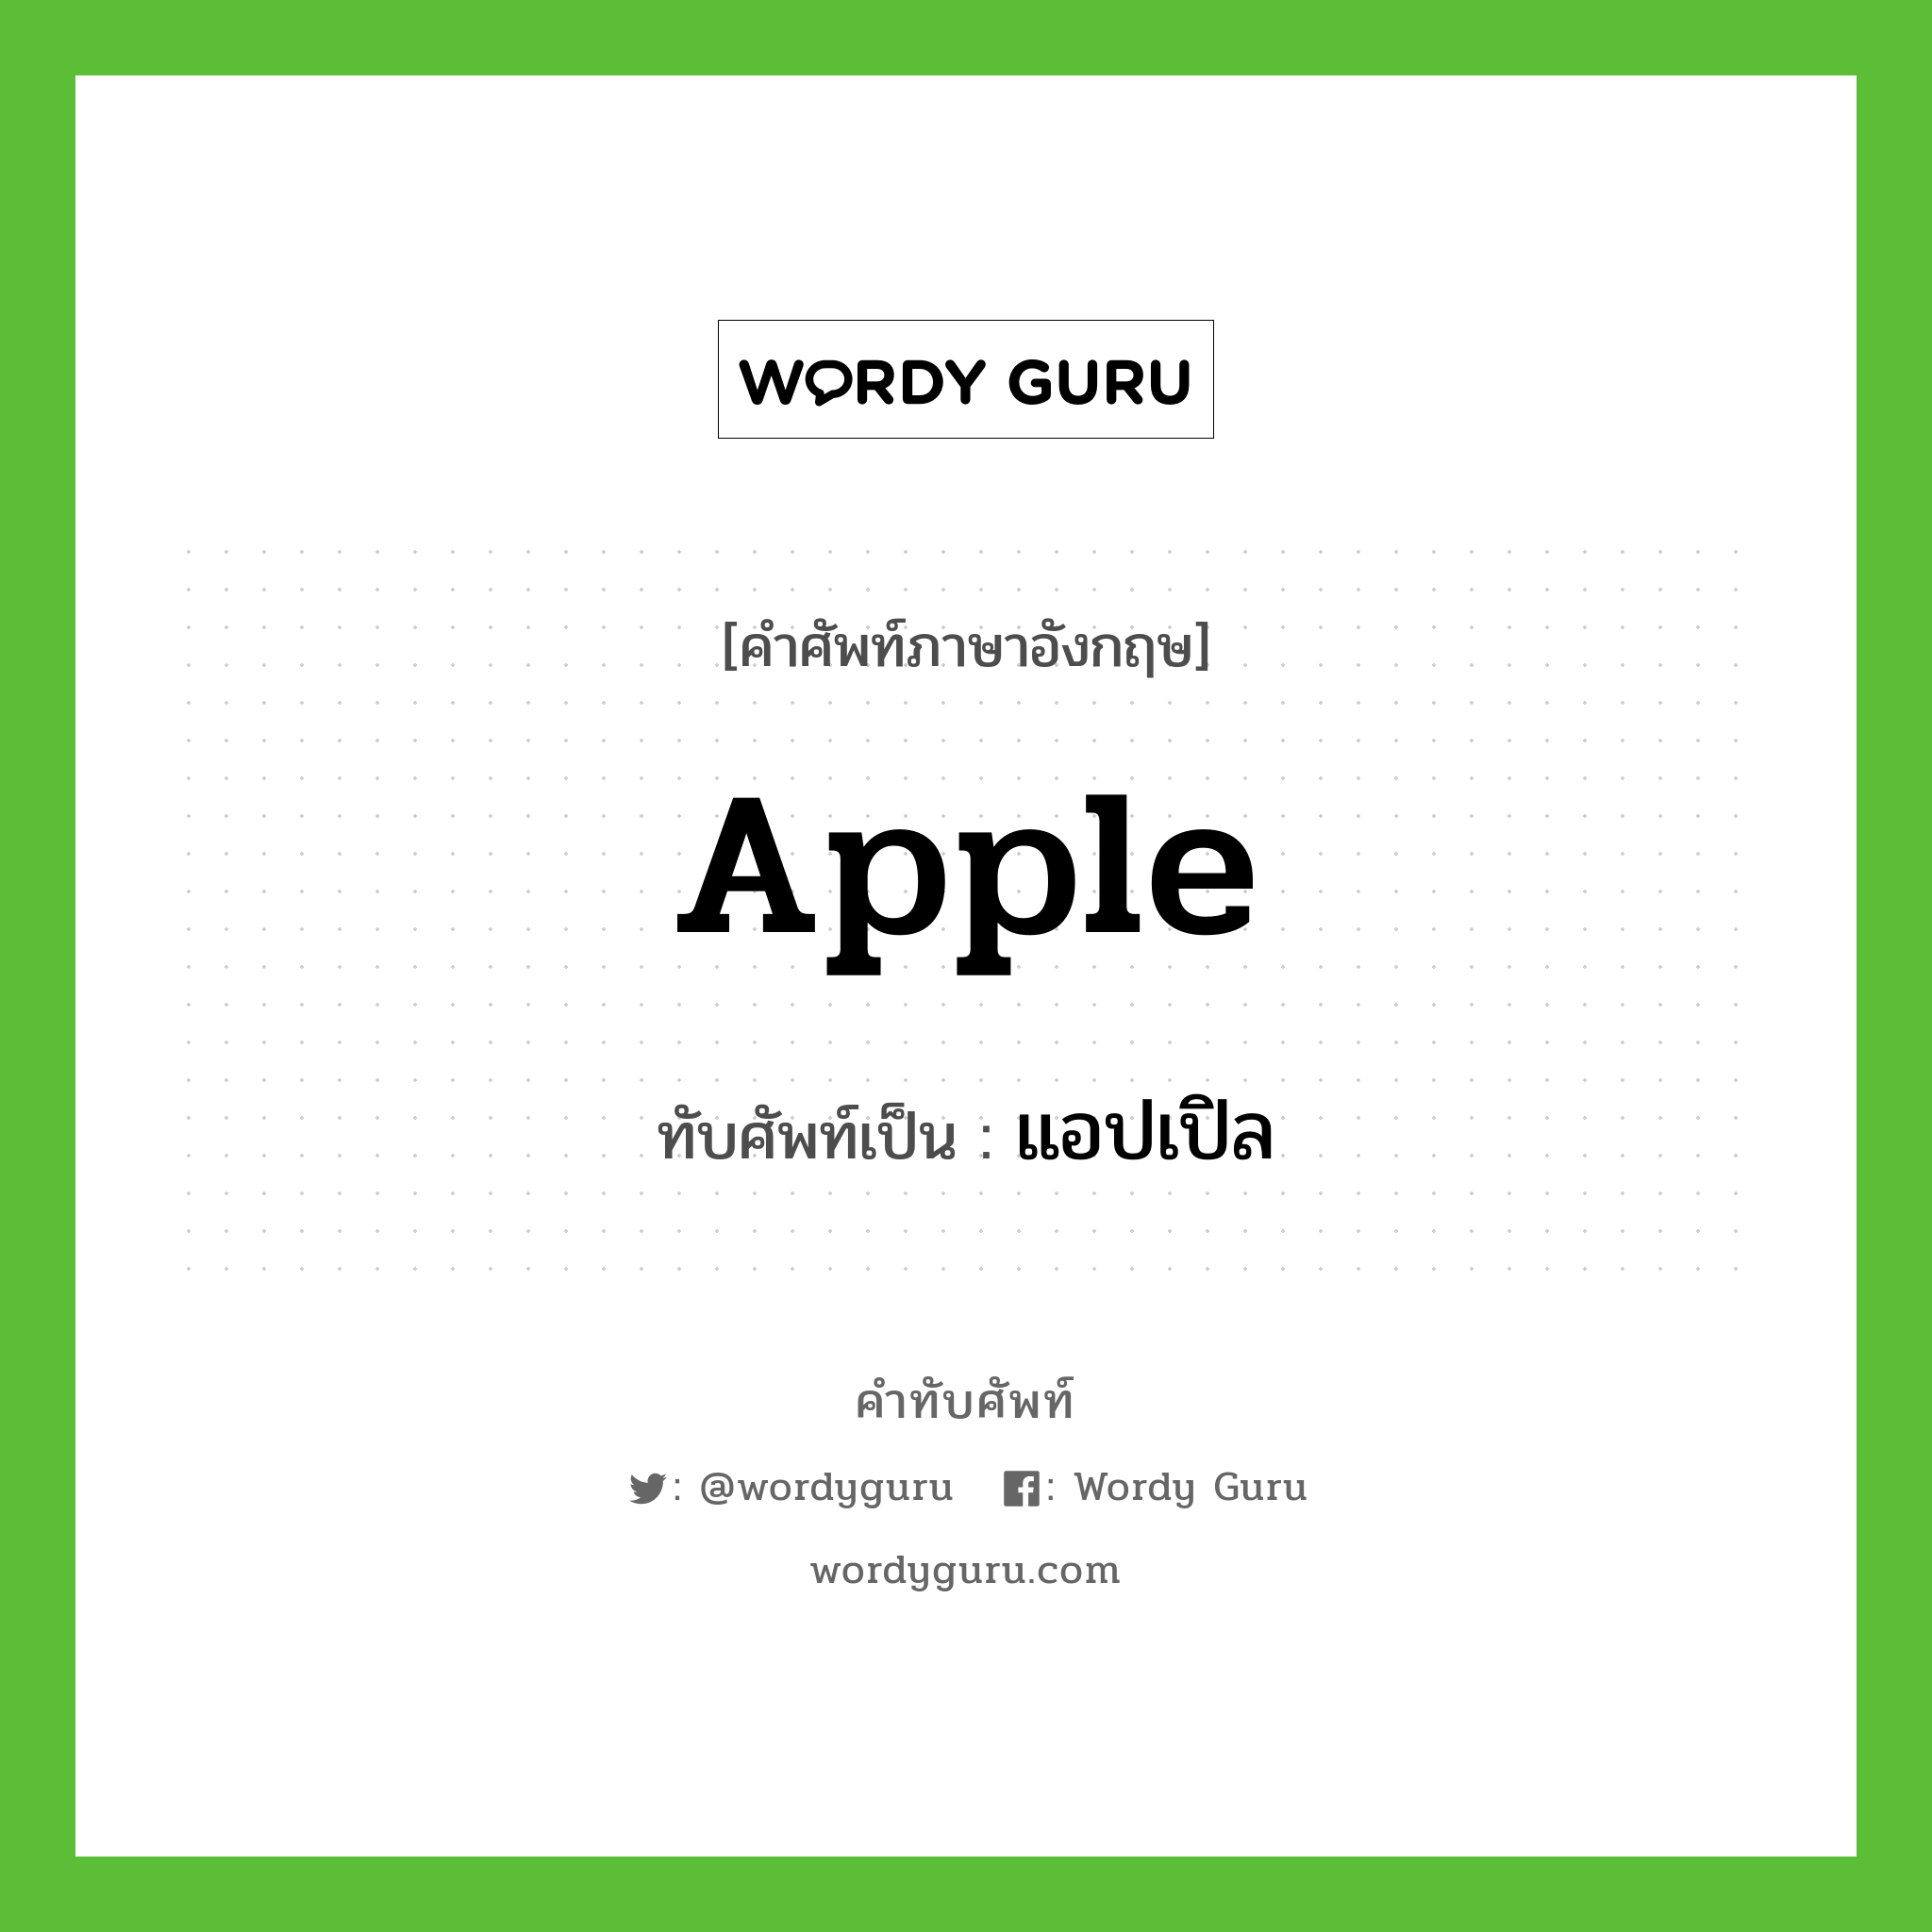 แอปเปิล เขียนอย่างไร?, คำศัพท์ภาษาอังกฤษ แอปเปิล ทับศัพท์เป็น apple